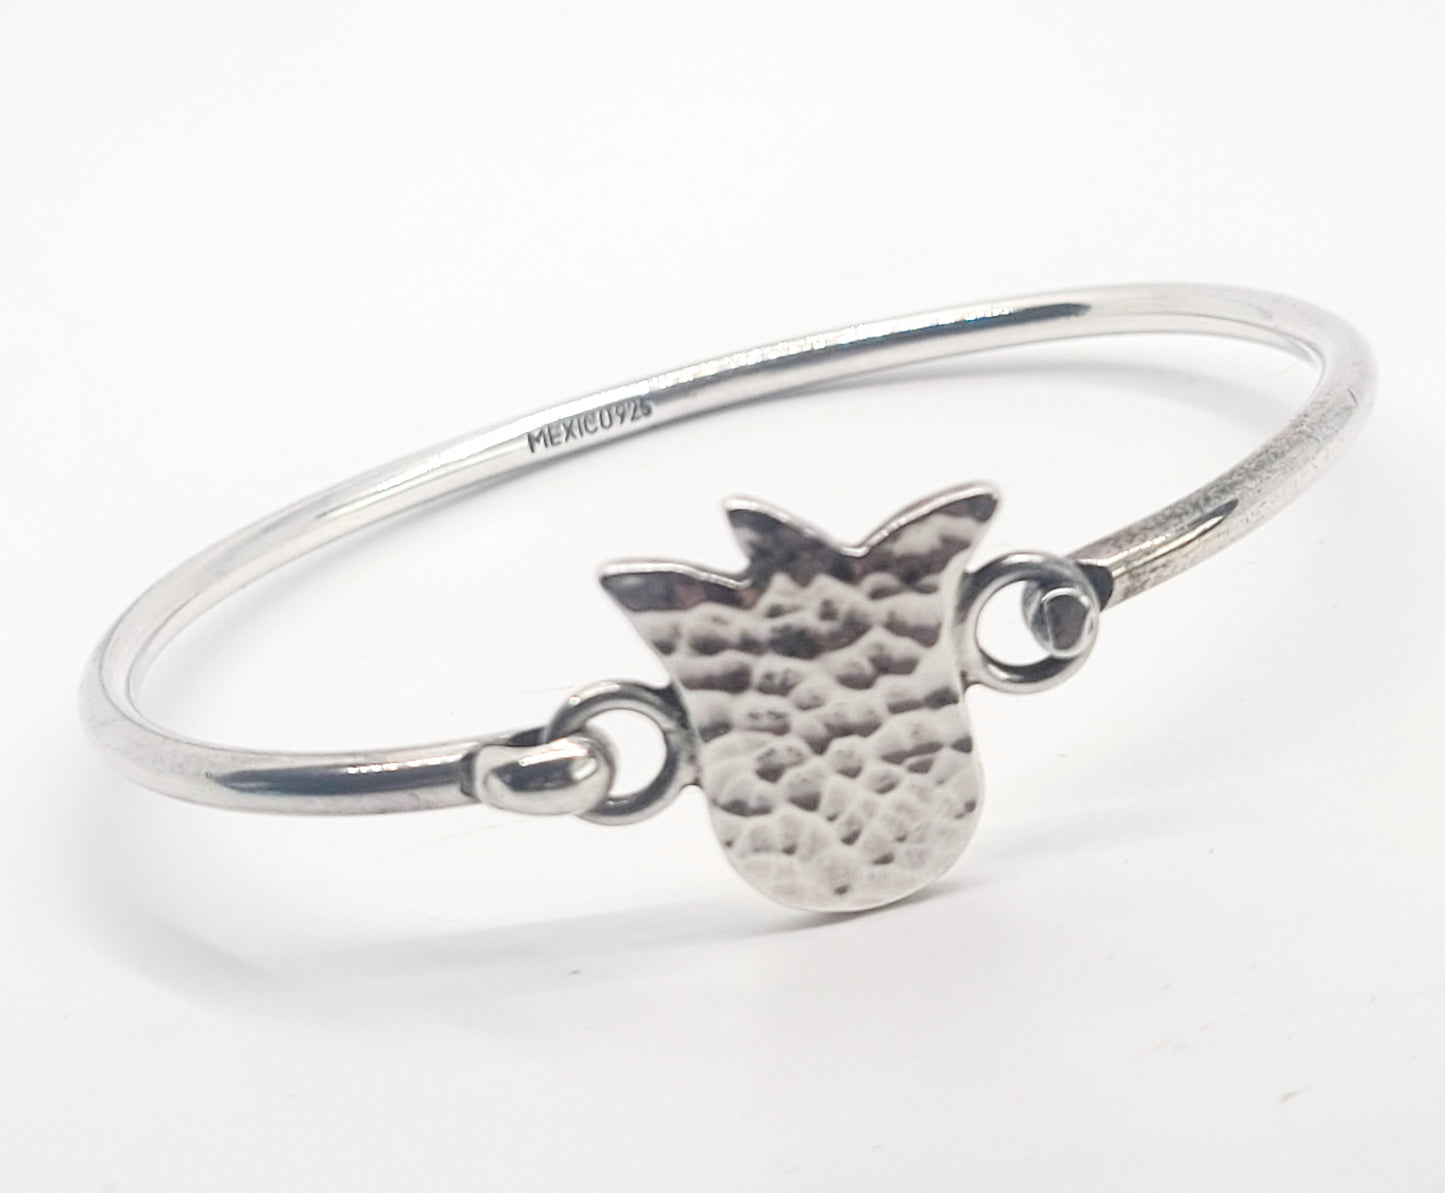 Hammered Lotus flower vintage Mexican artisan sterling silver bangle bracelet